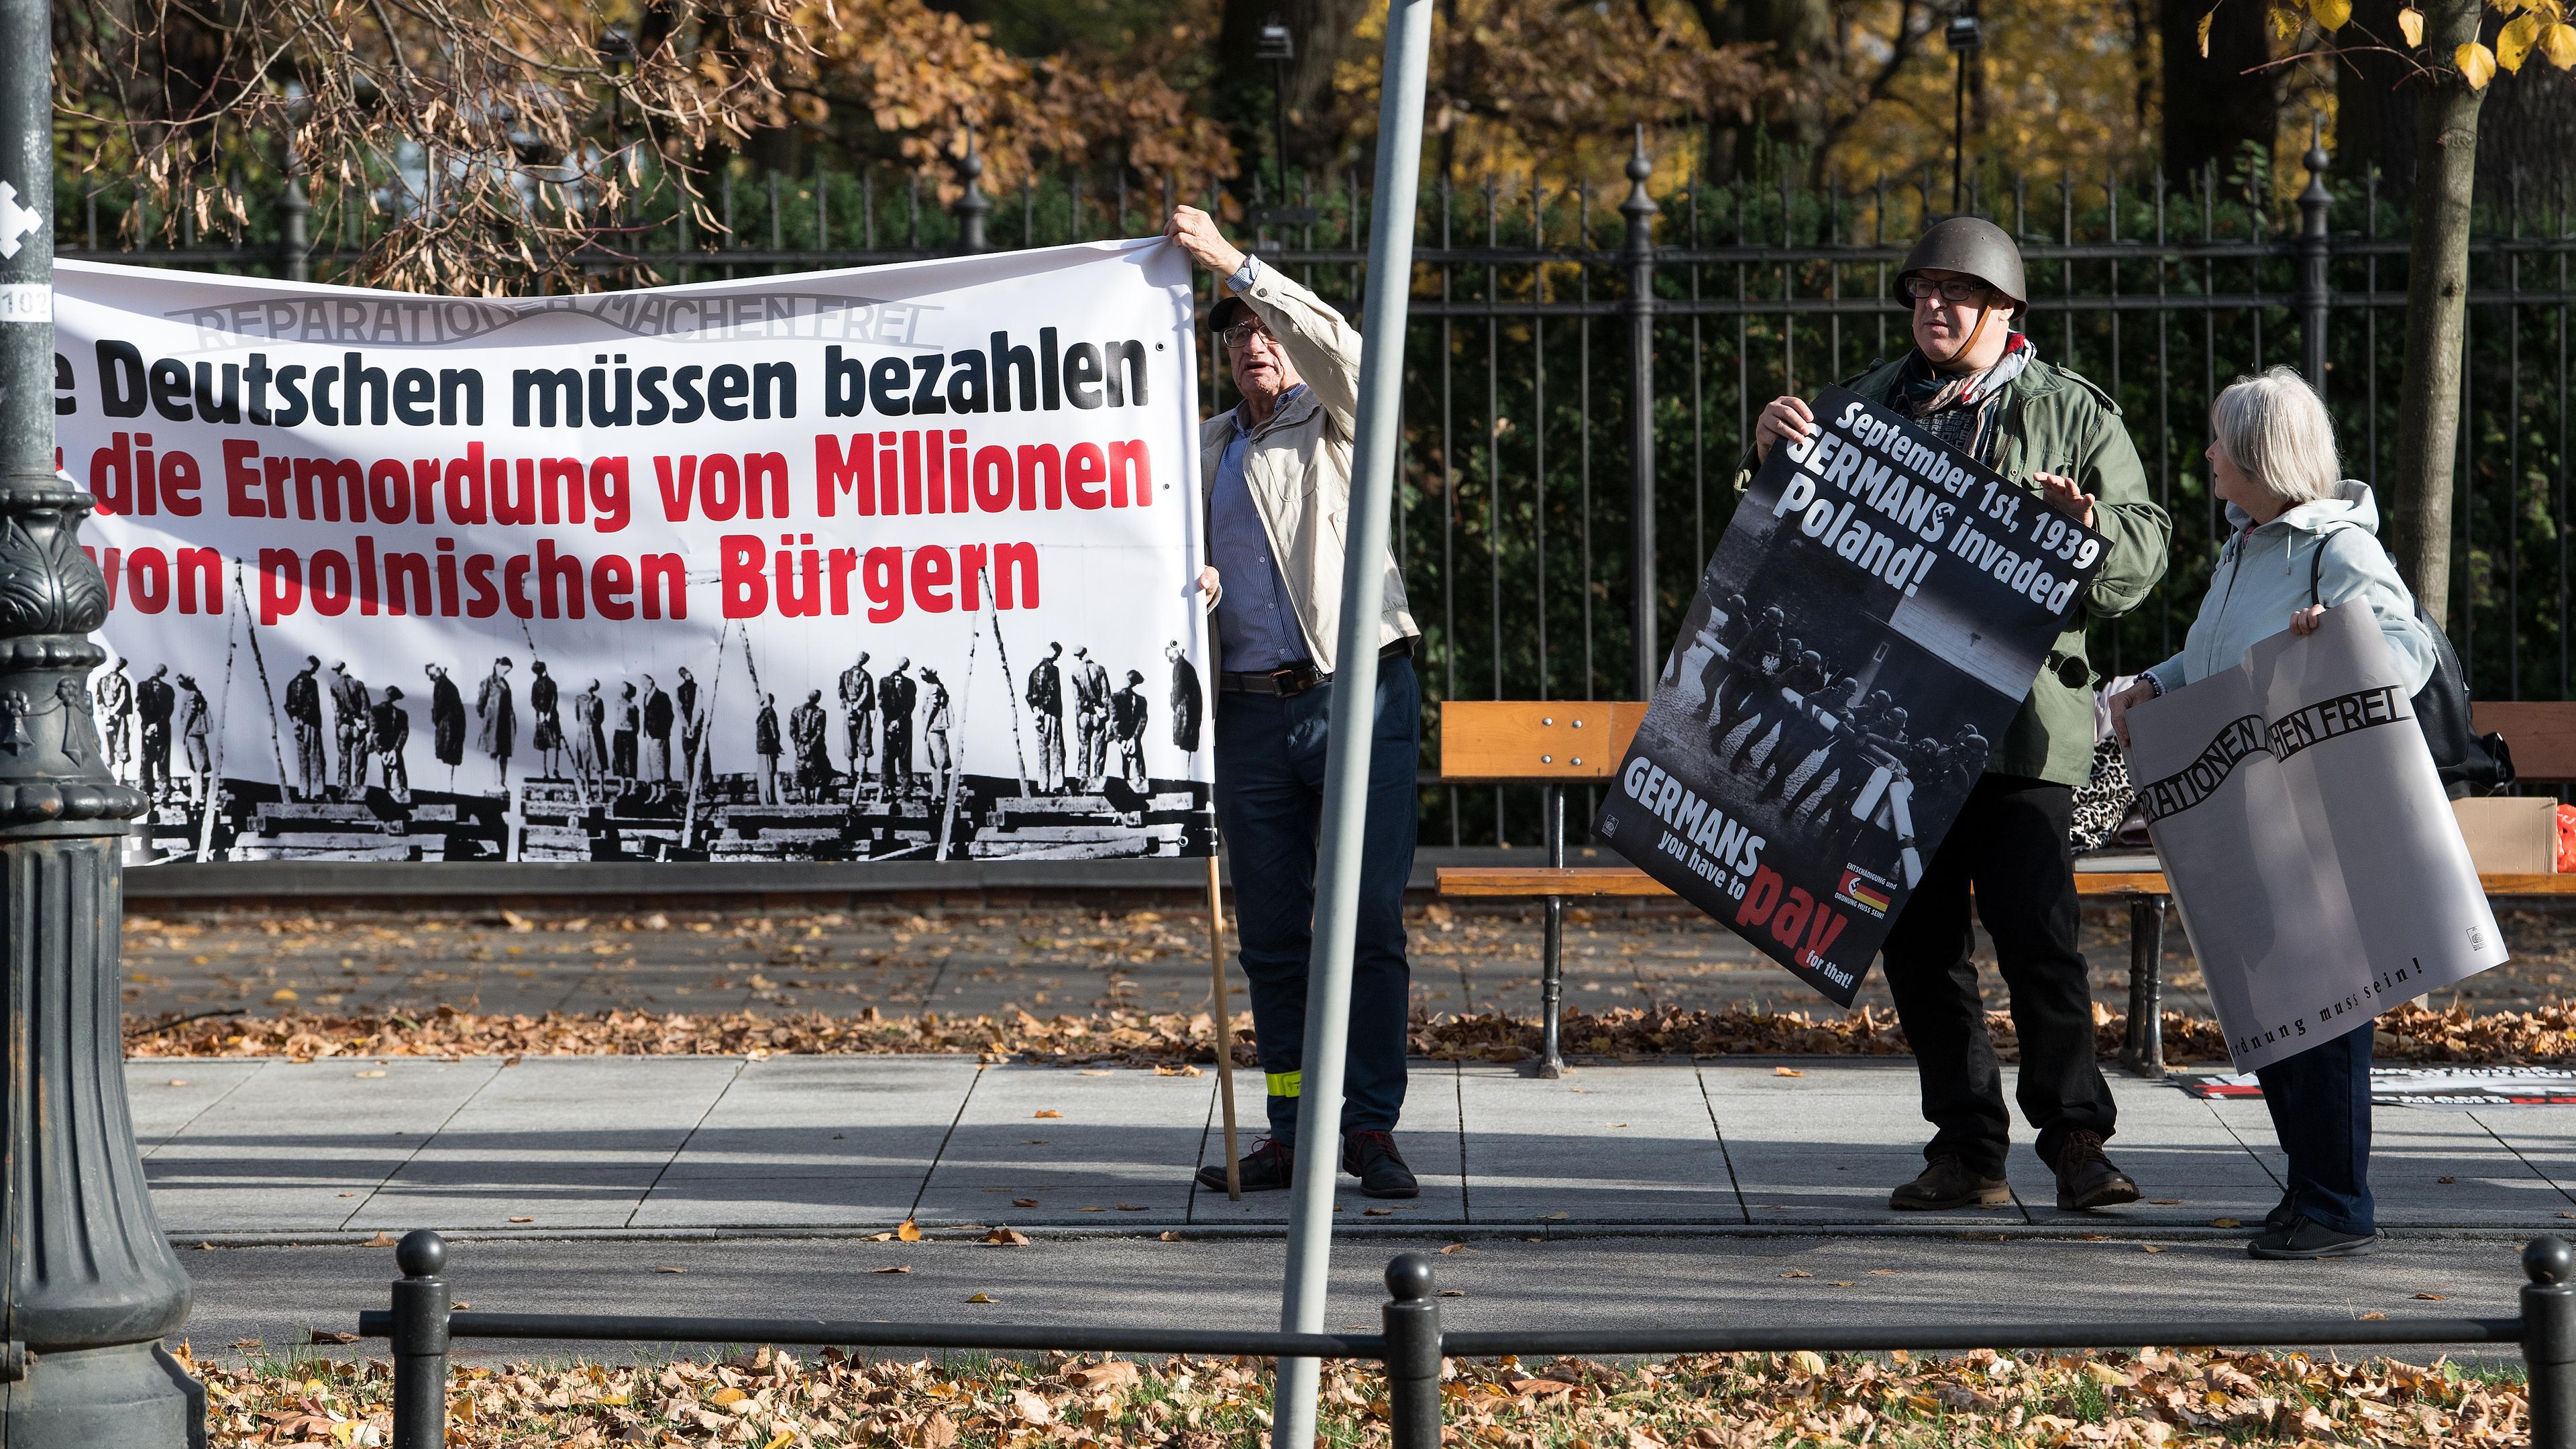 Demonstranten fordern, vor der Kanzlei des Ministerpräsidenten, Reparationszahlungen durch die Deutschen, aufgenommen am 02.11.2018 in Warschau, Polen